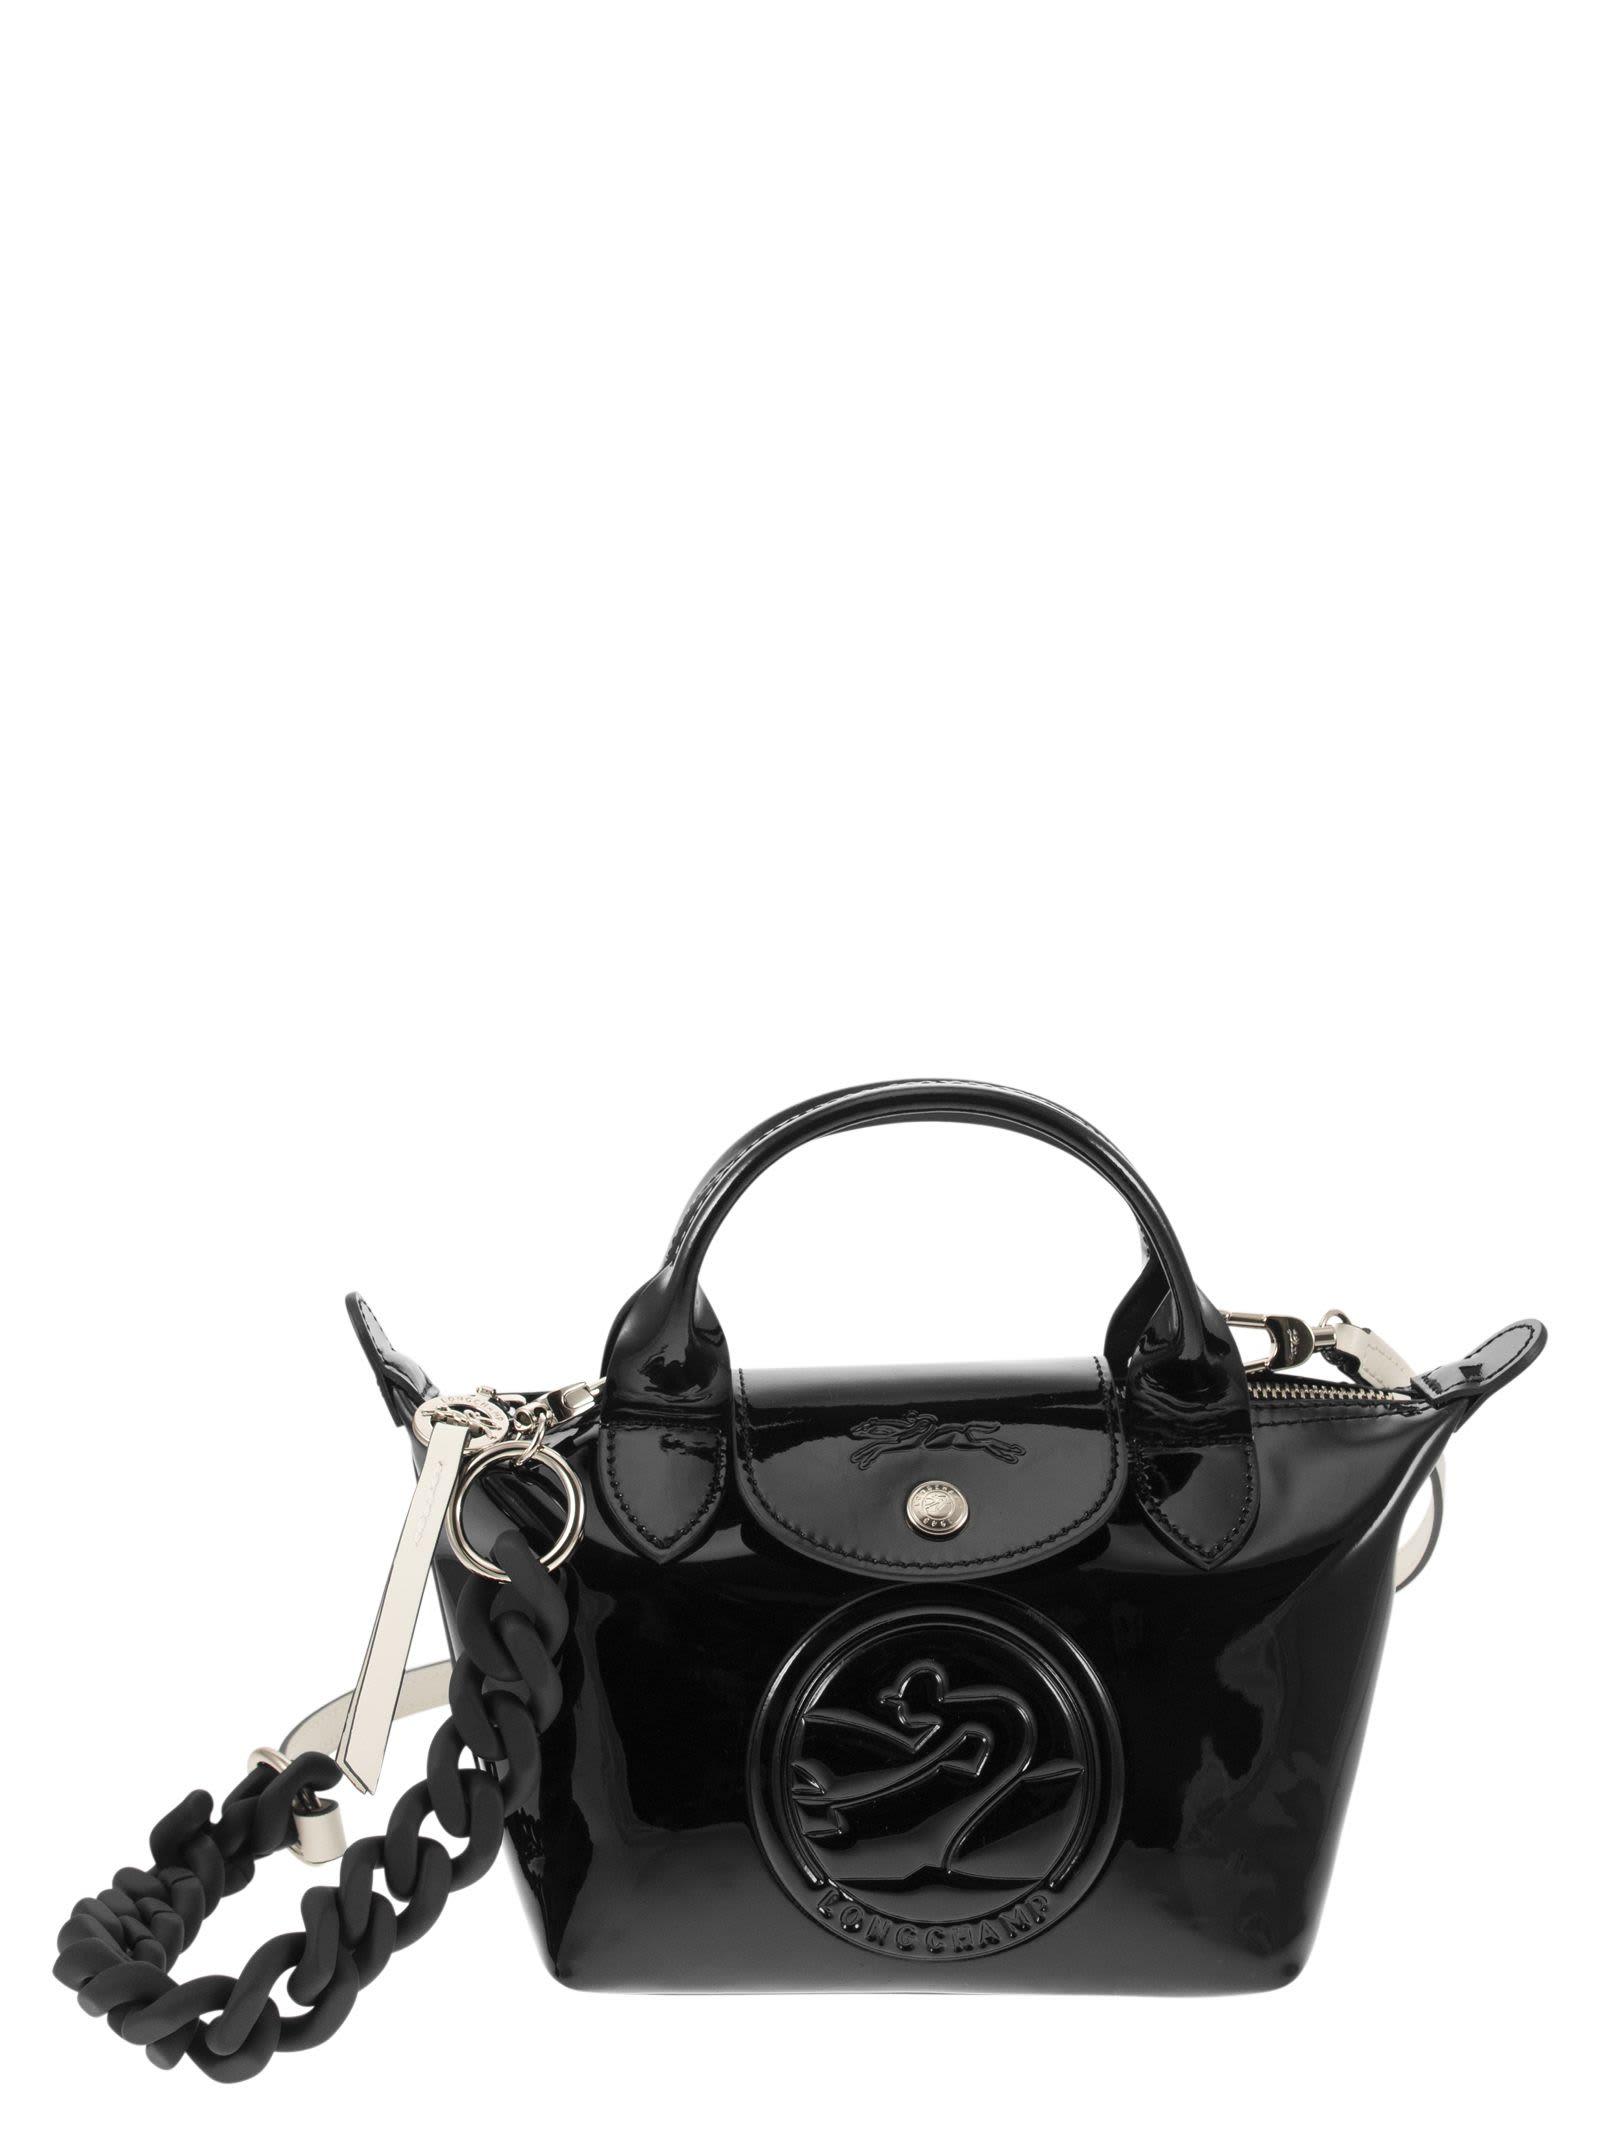 Longchamp Le Pliage Cuir Xs Leather Top-Handle Bag Black